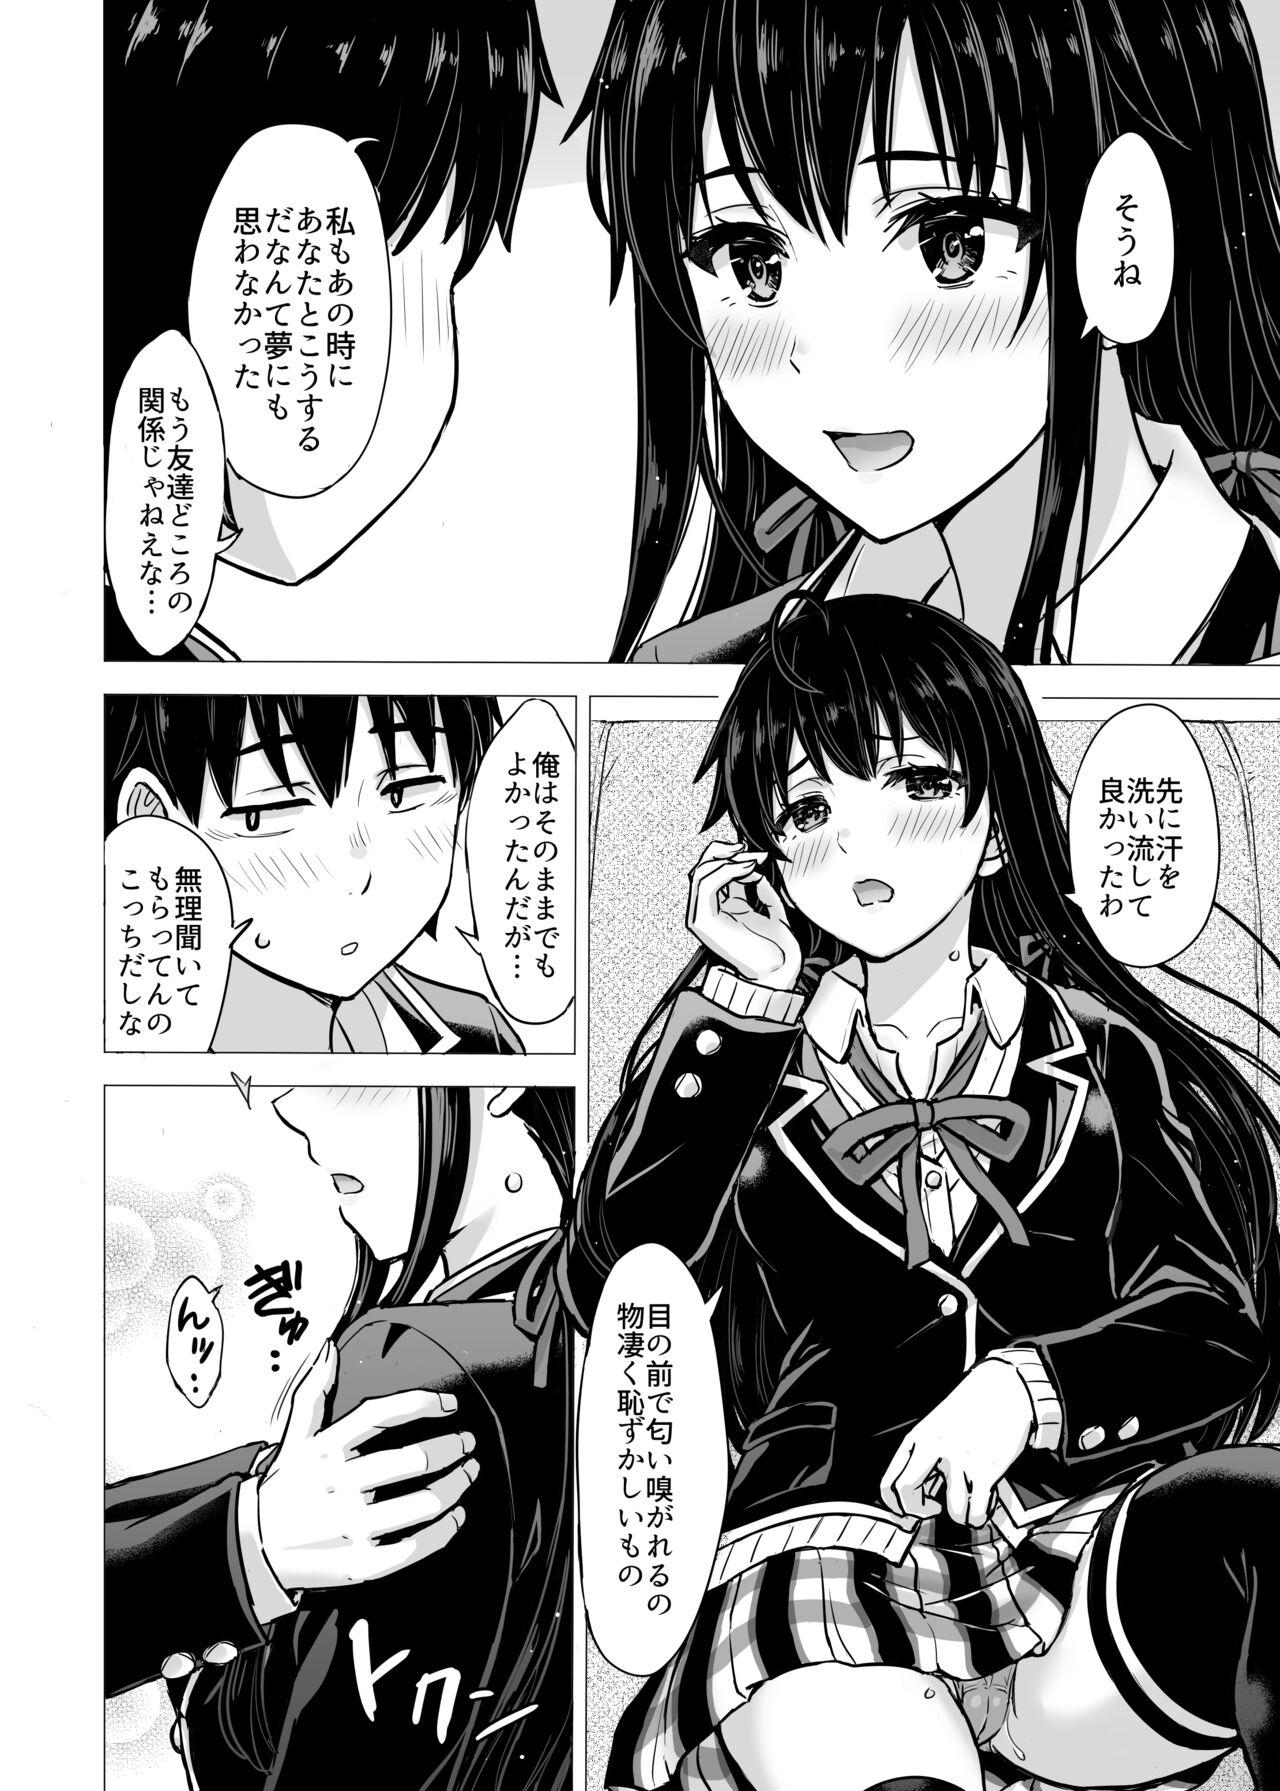 Toilet Yukinon Manga - Yahari ore no seishun love come wa machigatteiru Orgame - Picture 2